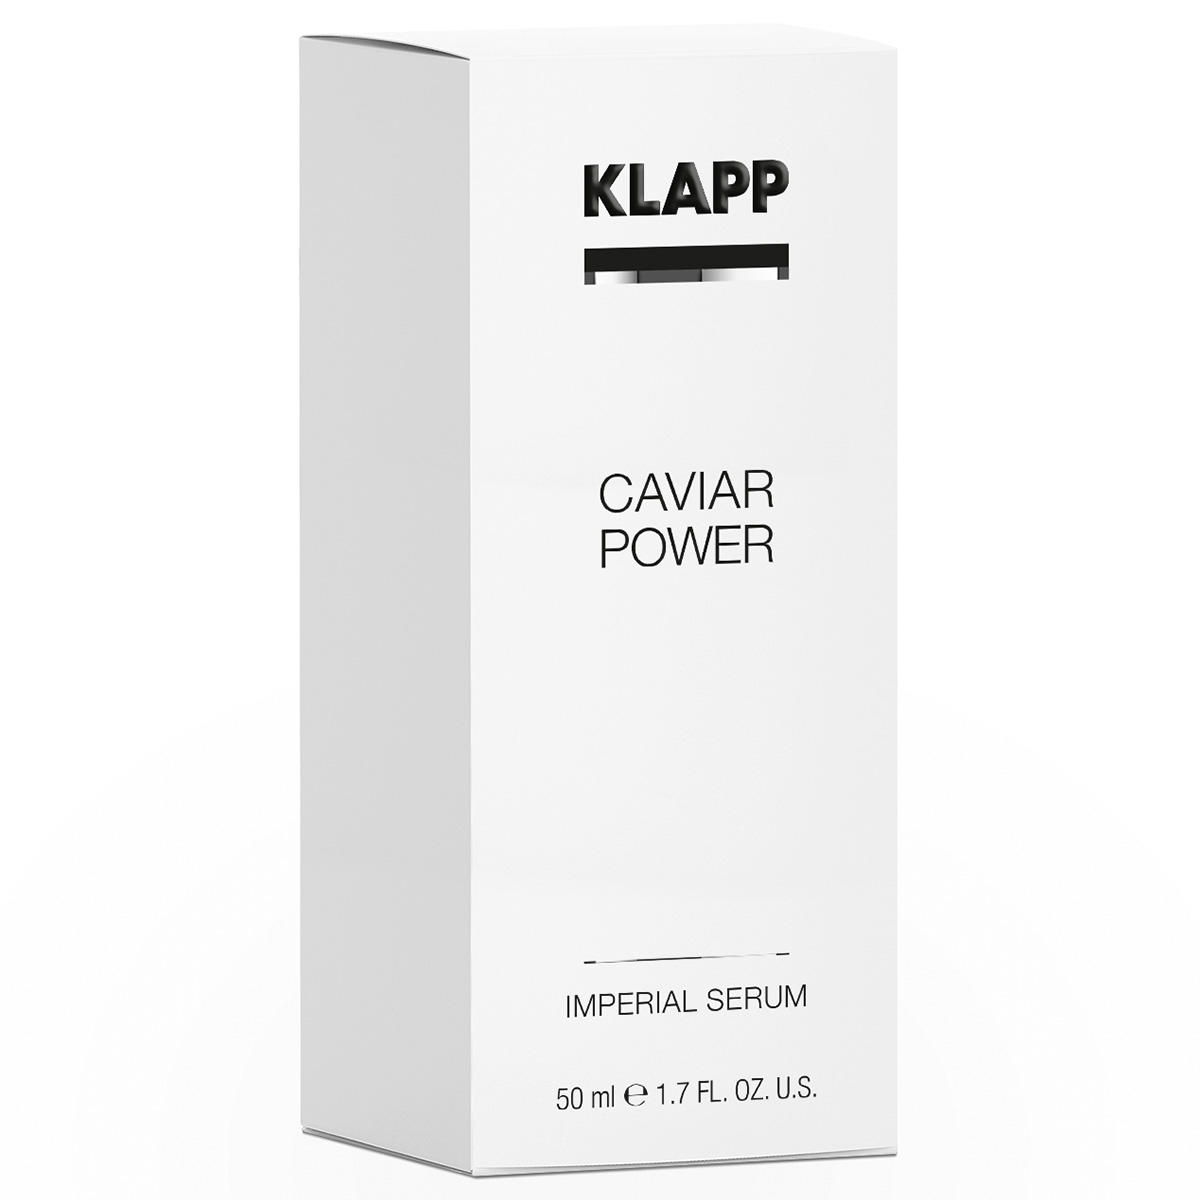 KLAPP CAVIAR POWER Imperial Serum 40 ml - 2